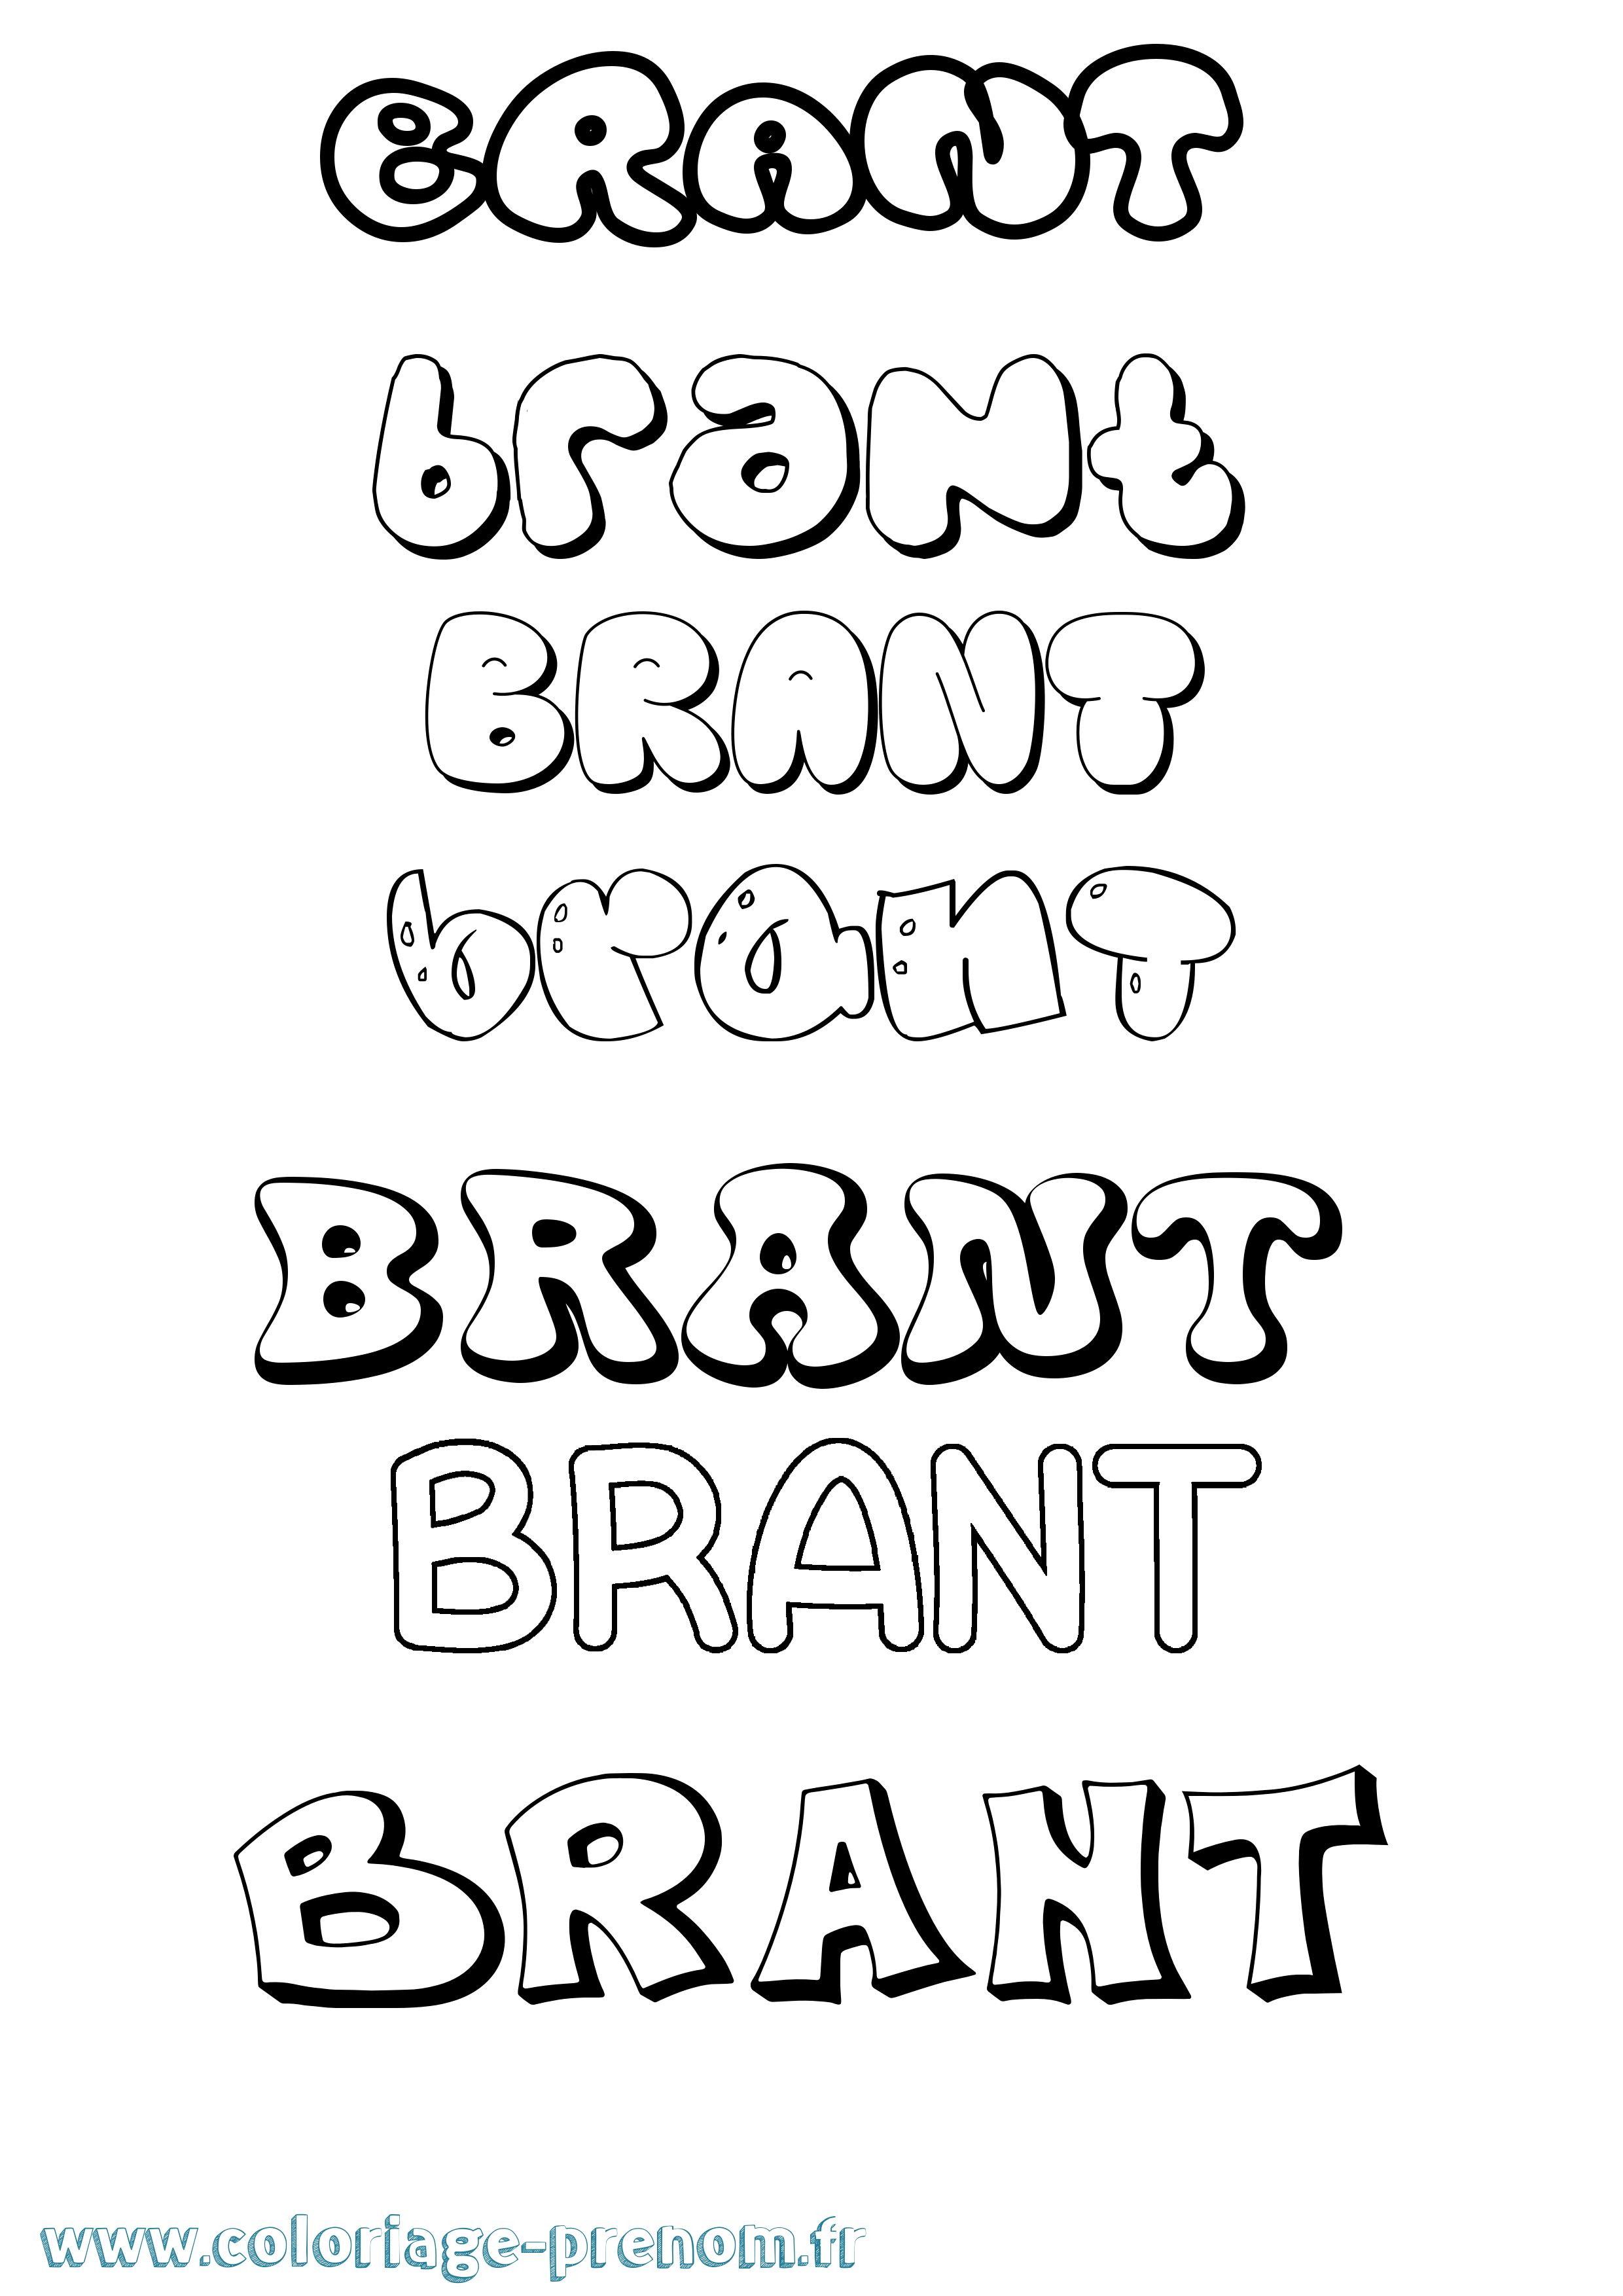 Coloriage prénom Brant Bubble